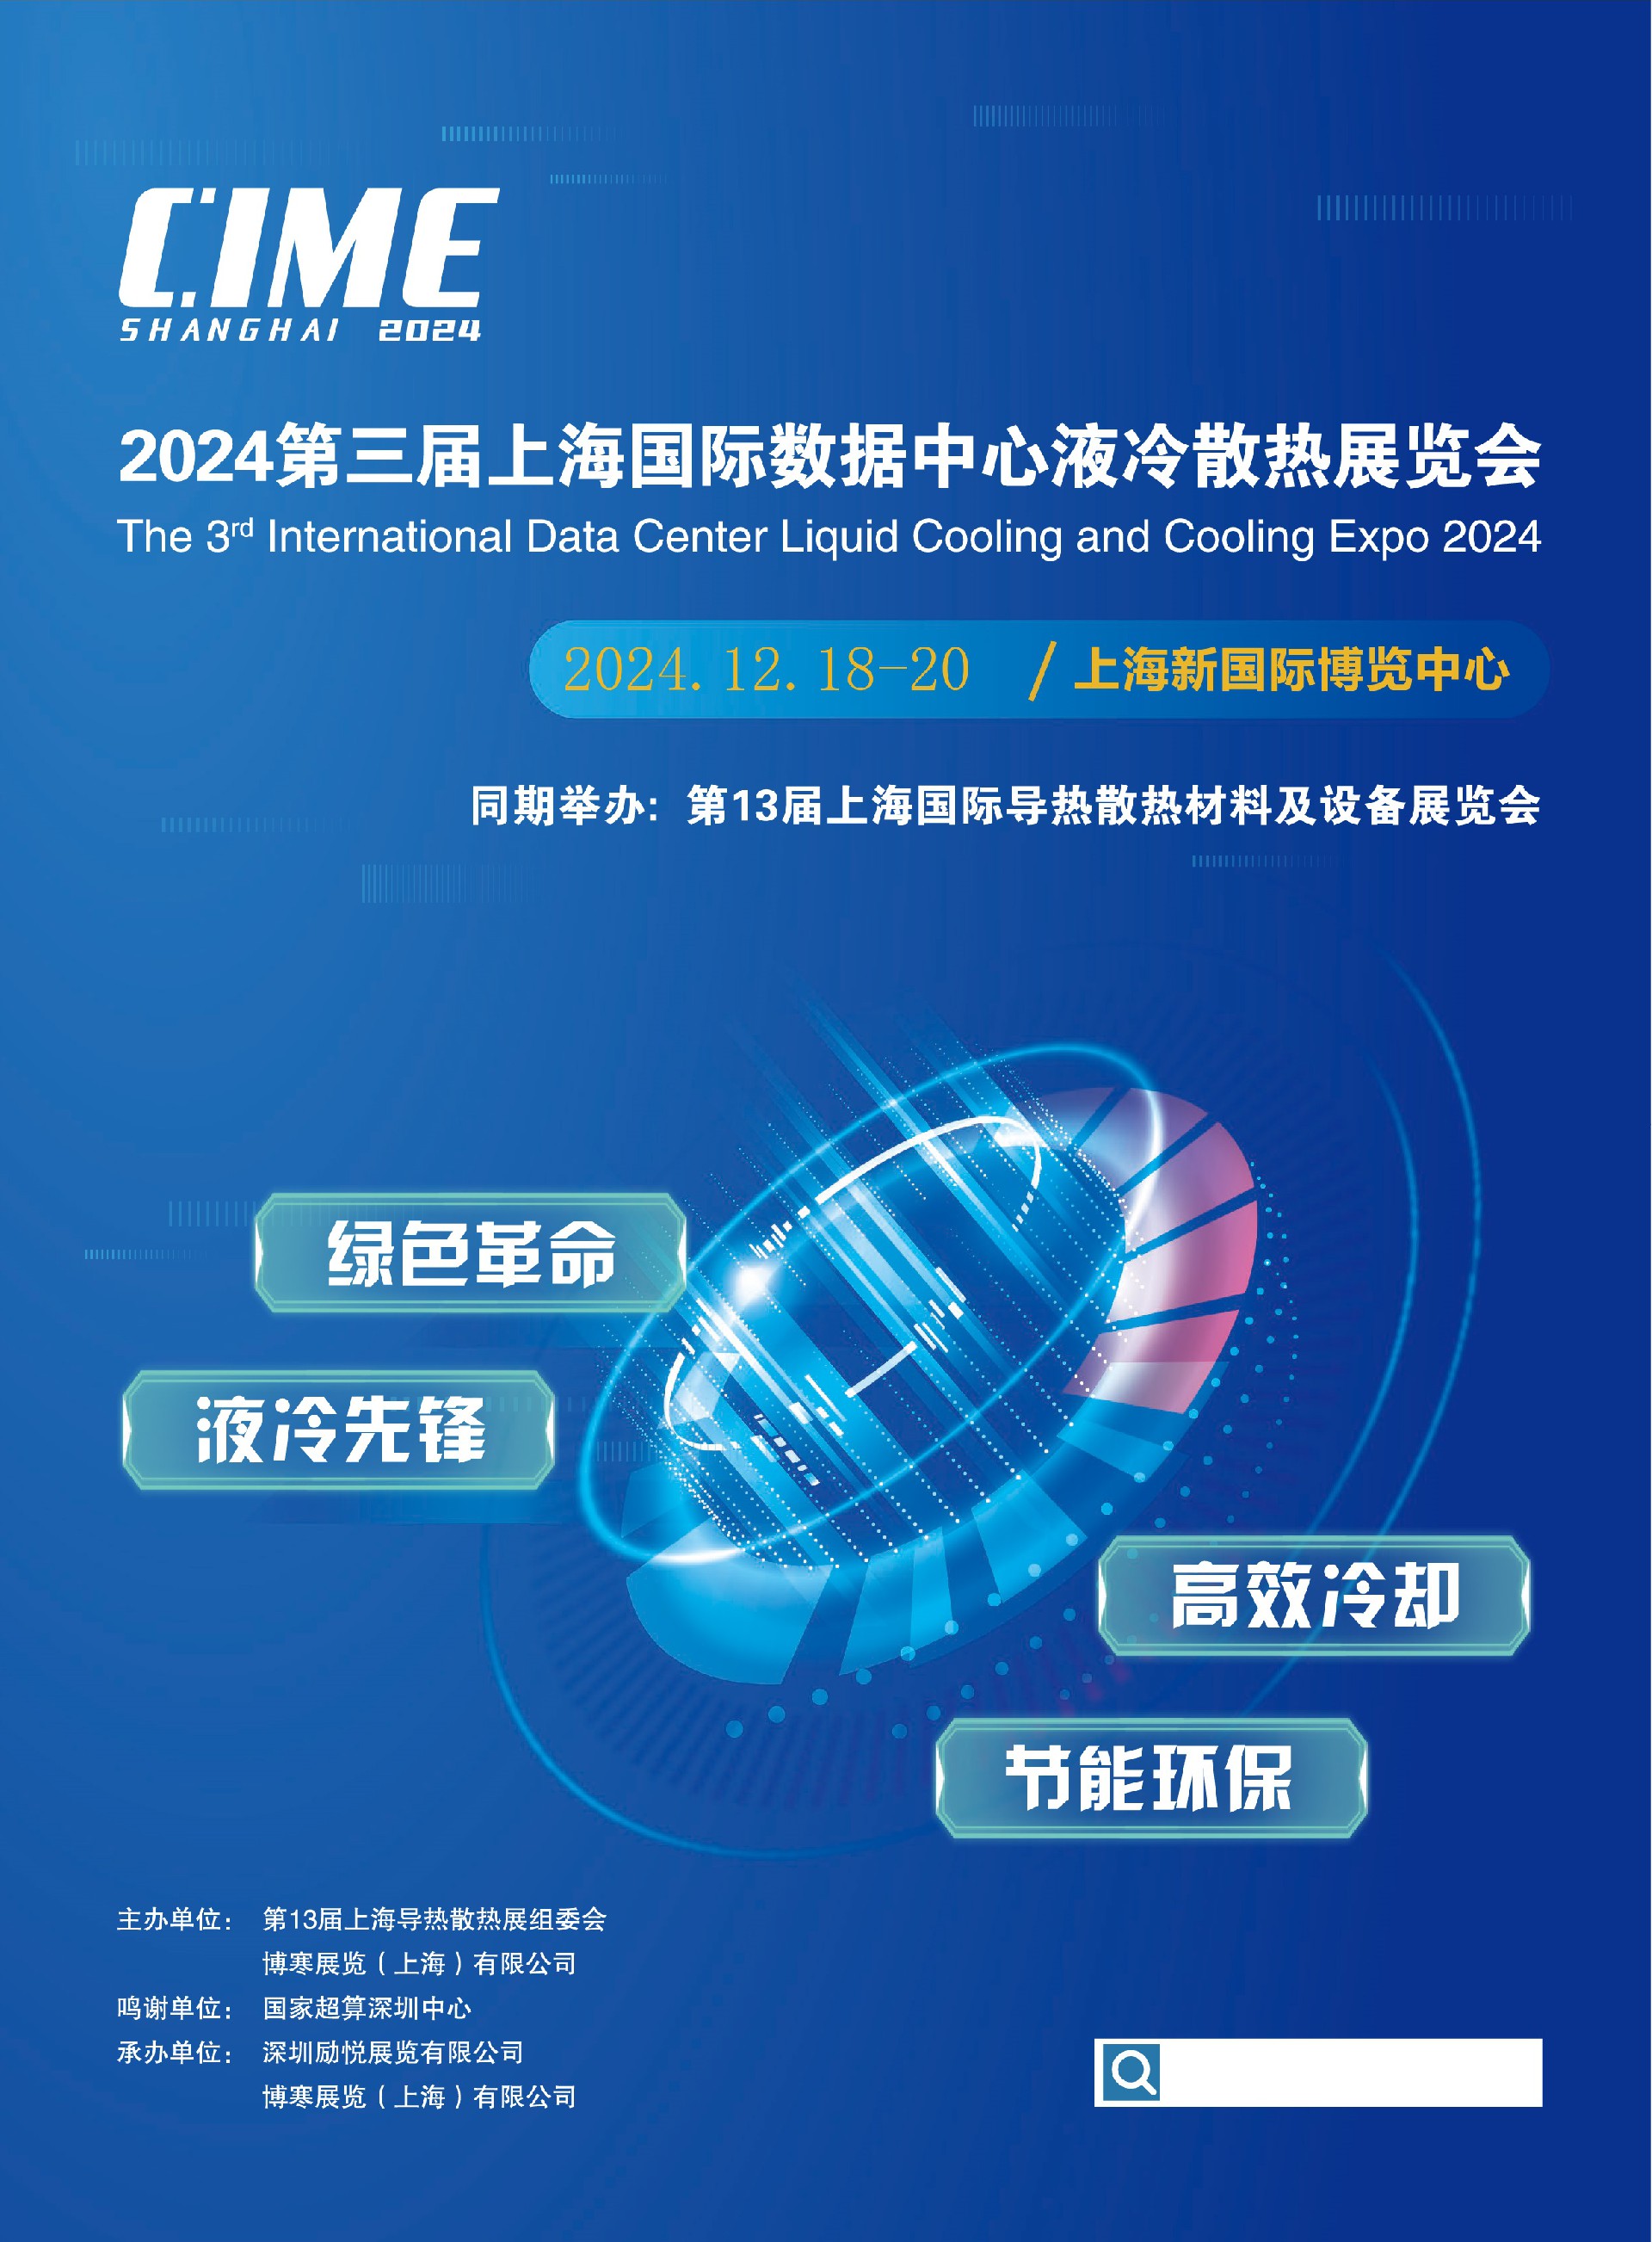 2024深圳/上海国际数据中心液冷产业展览会